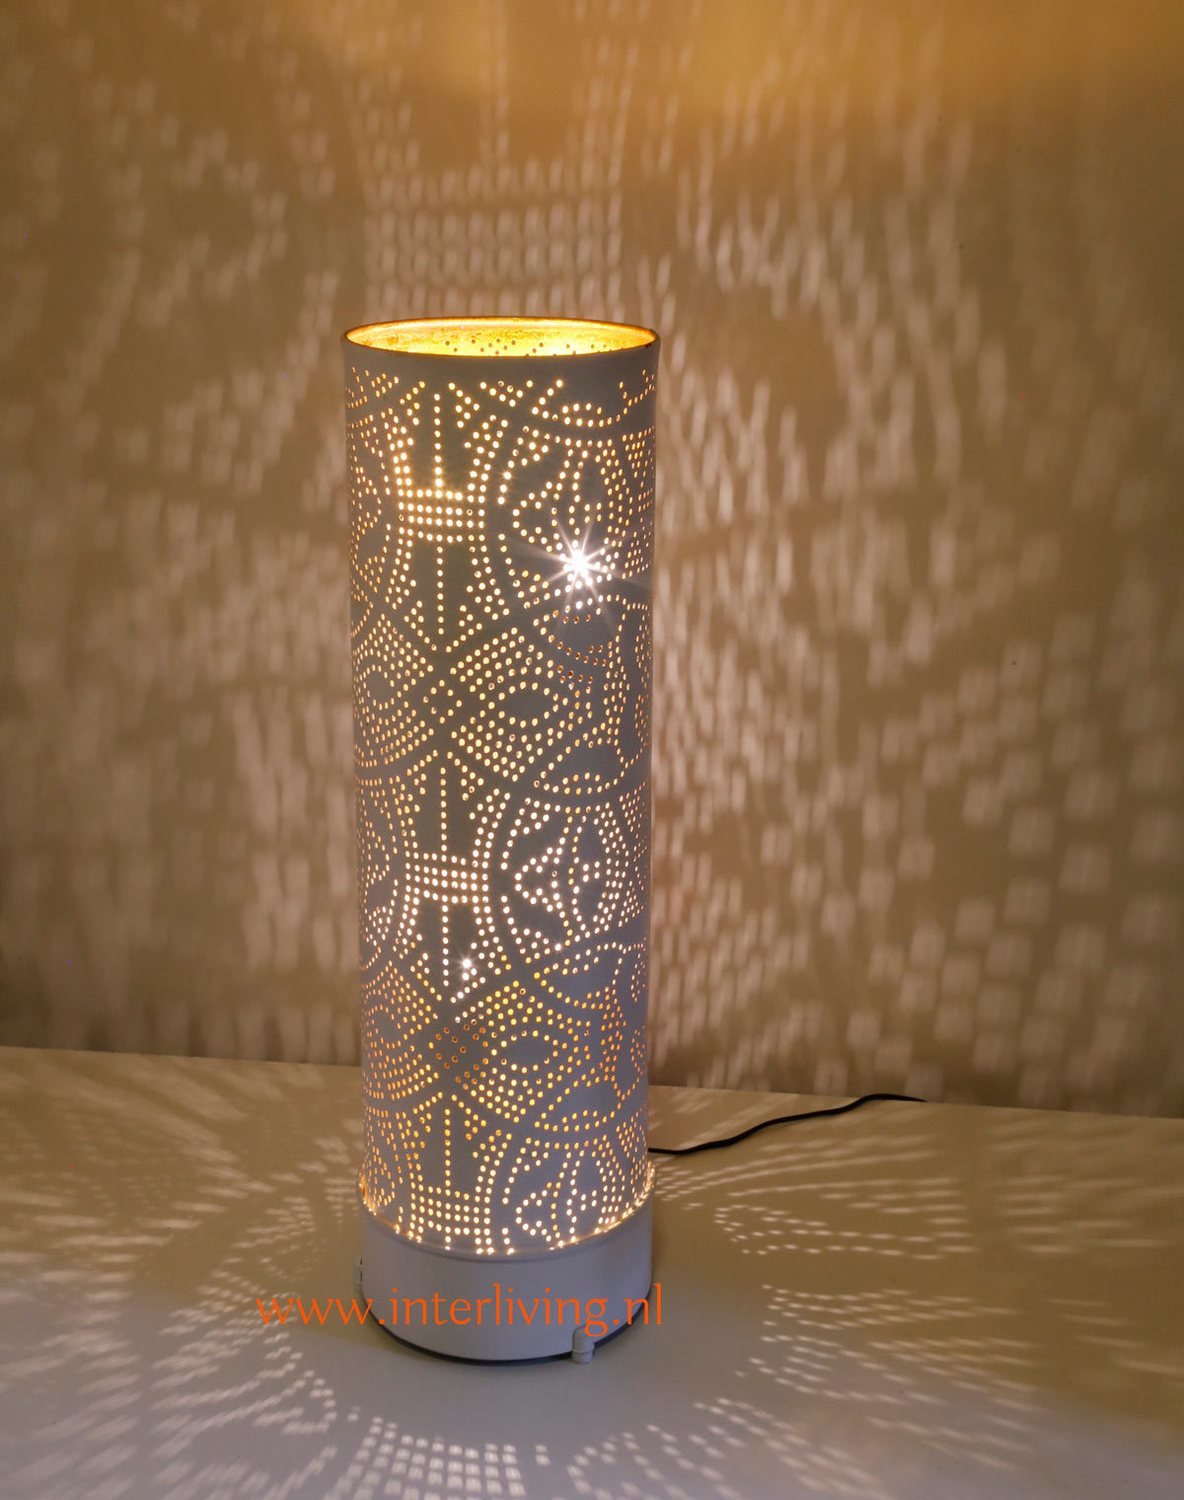 oosterse vloerlamp staande lamp met filigrain patronen van metaal - wit goud- diverse maten